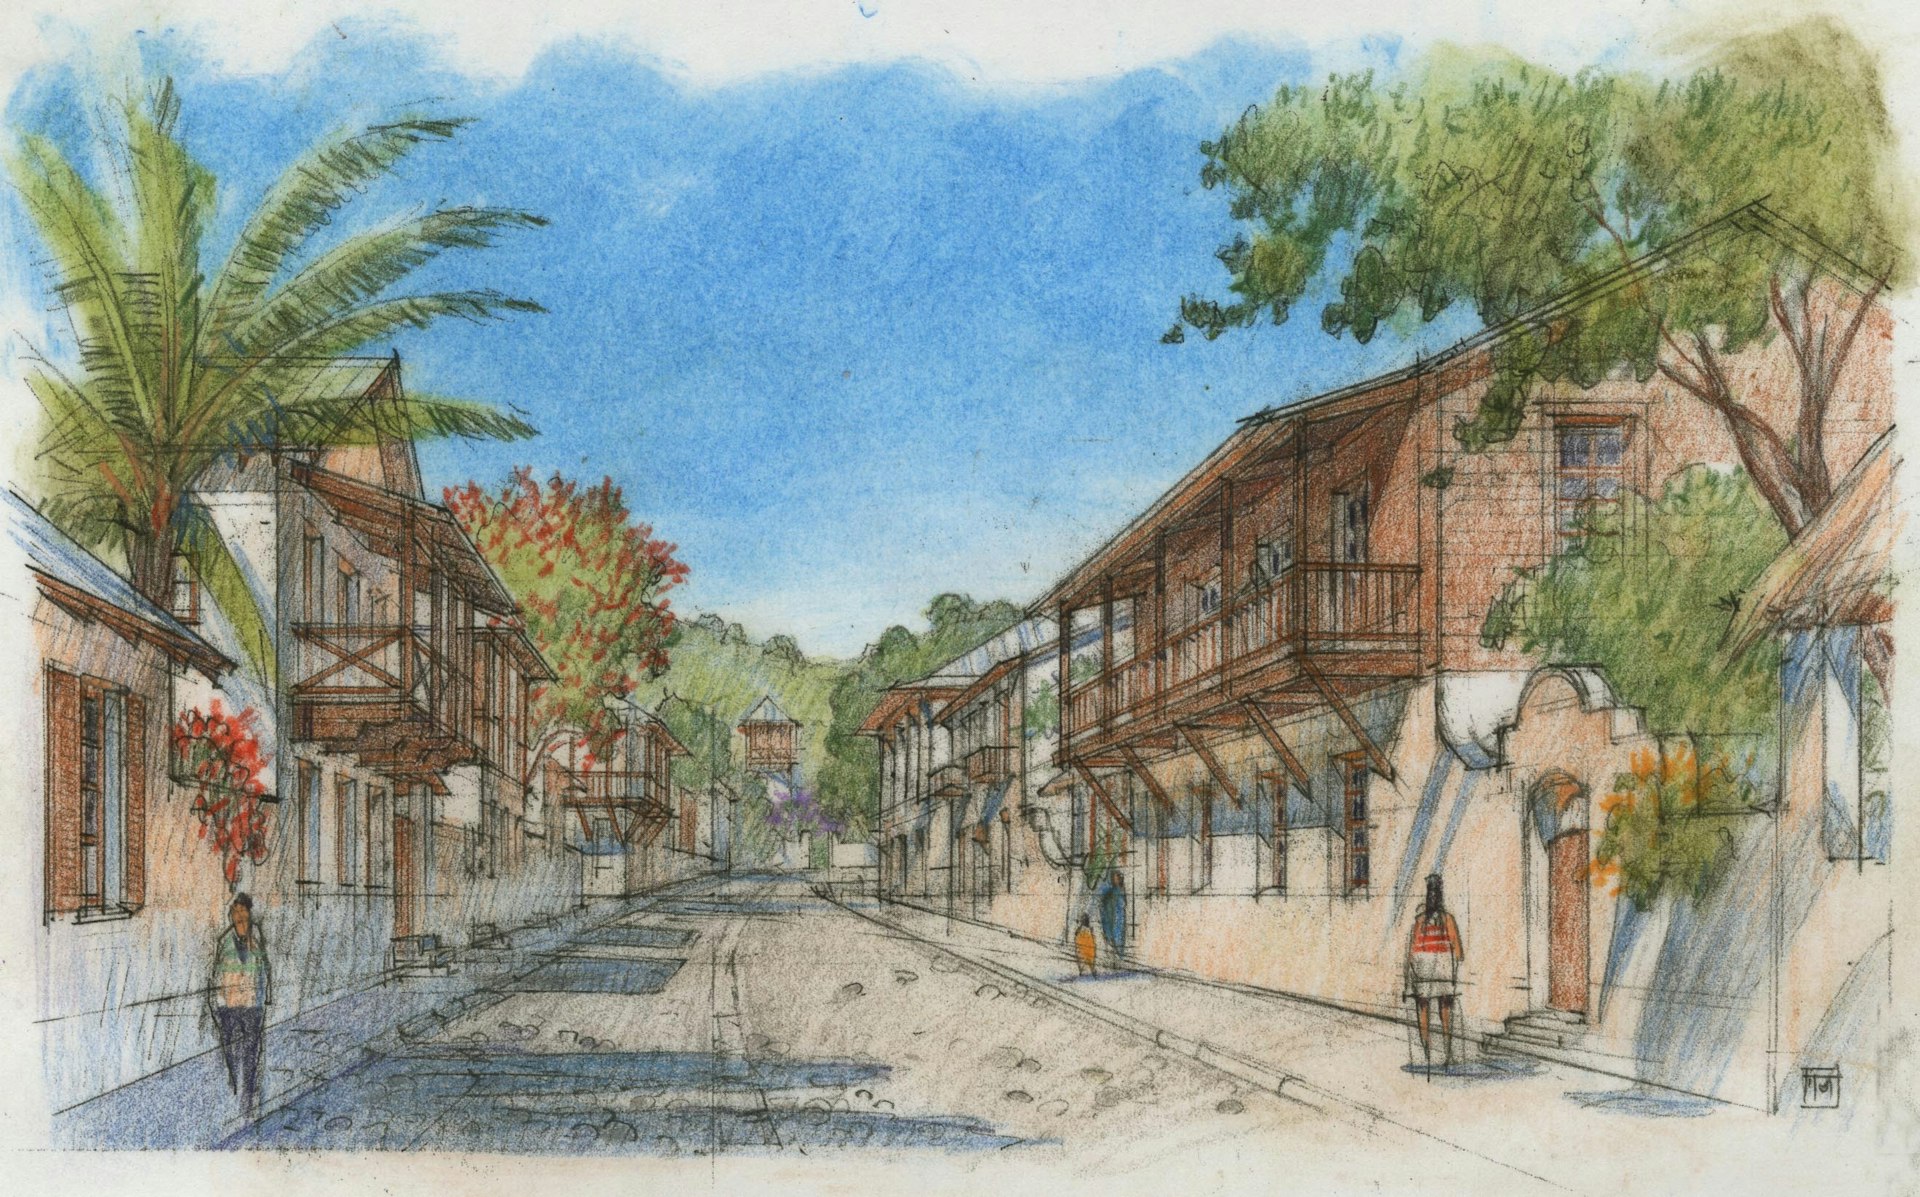 Kalu Yala - Town Sketch